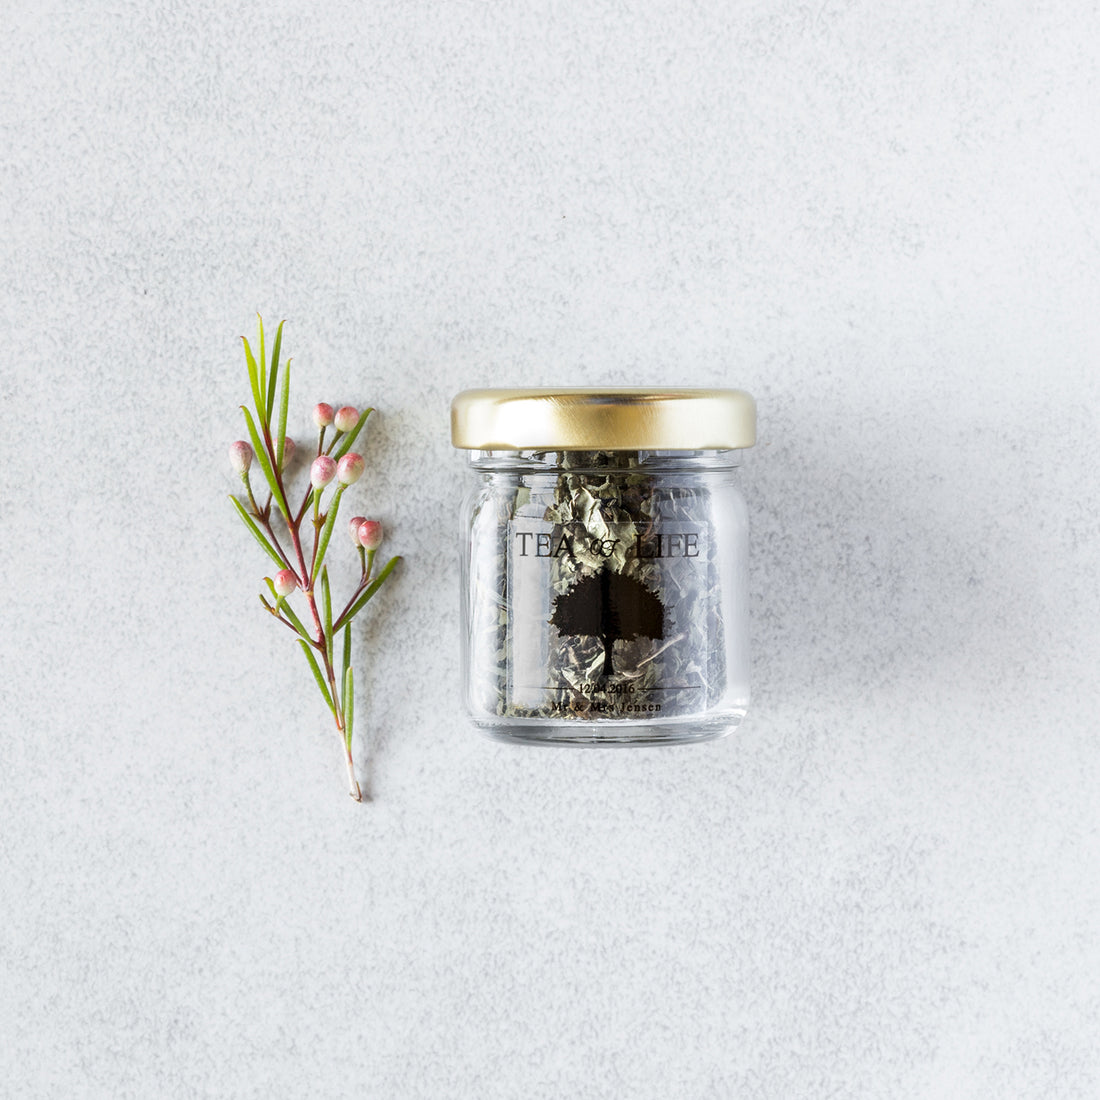 Loose Leaf Tea Jar Favour - Personalised